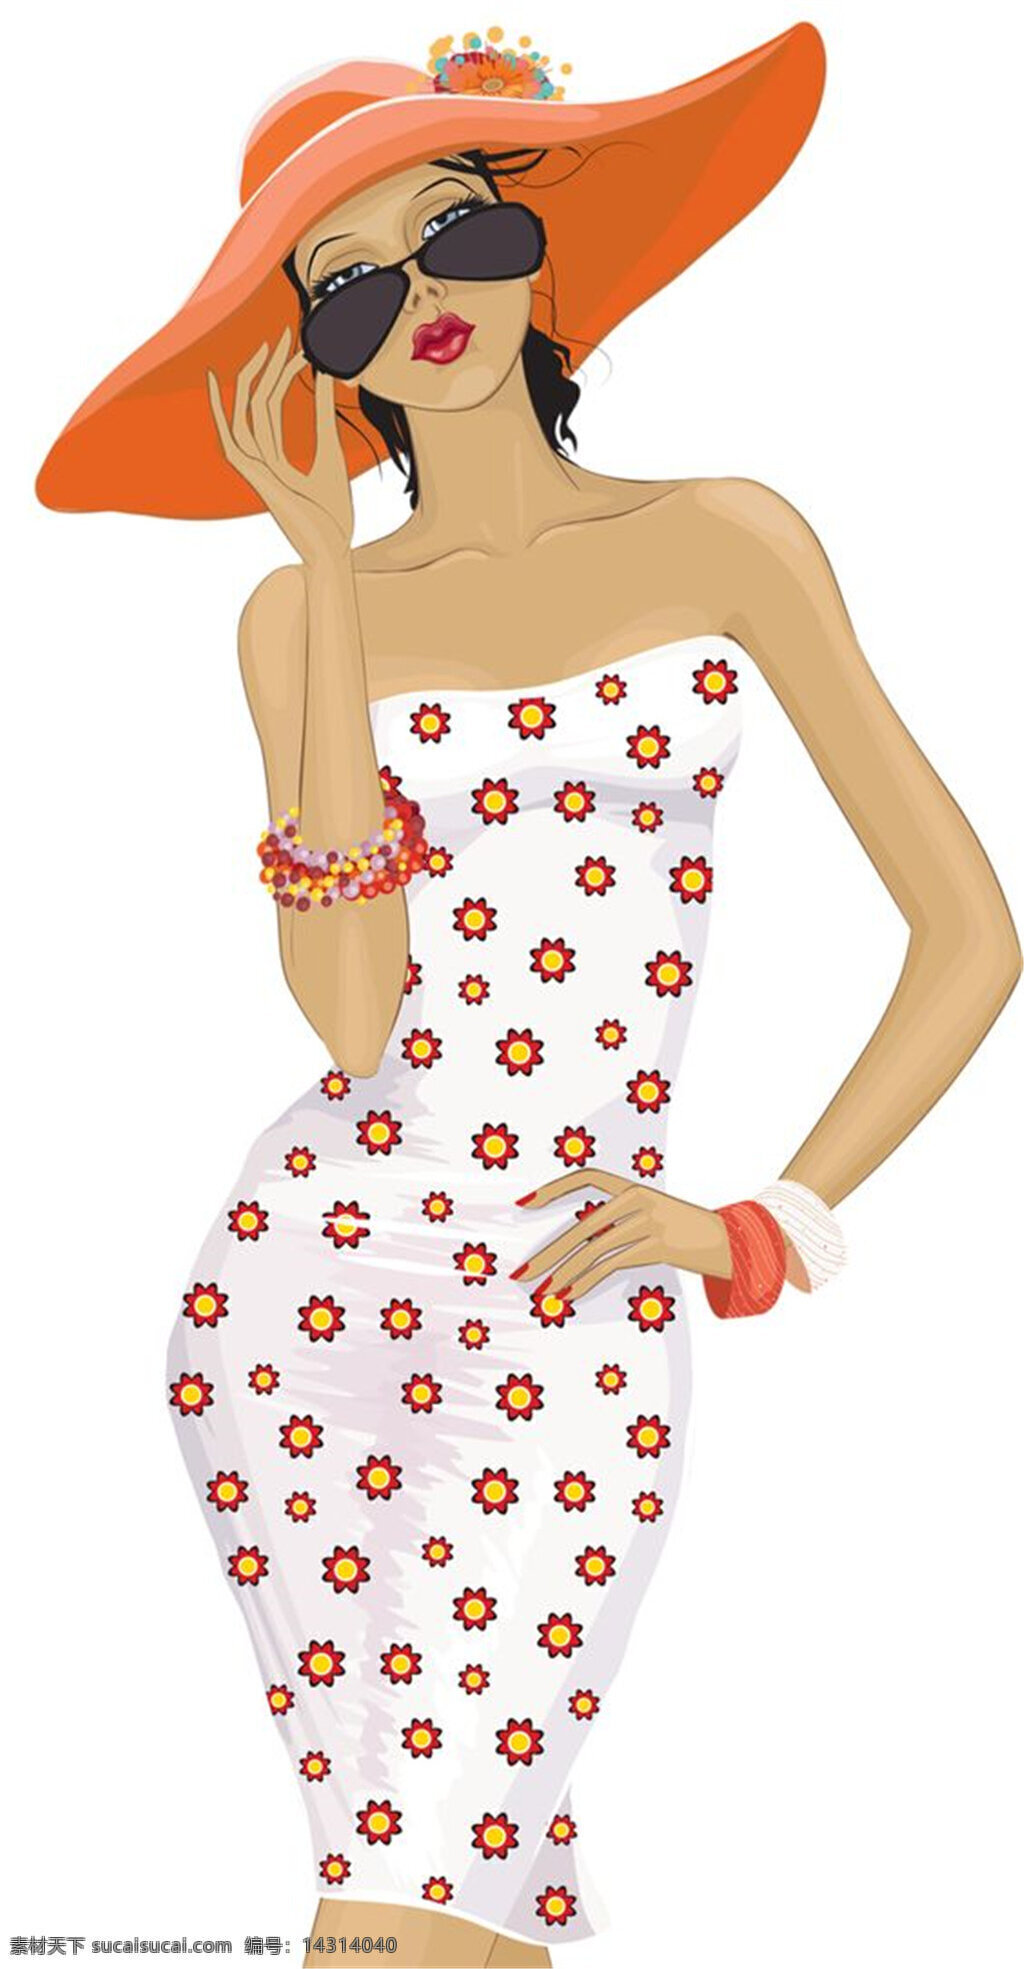 清新 雏 菊 图案 抹胸 裙 女装 效果图 橙色帽子 服装设计 服装效果图 抹胸裙 手环